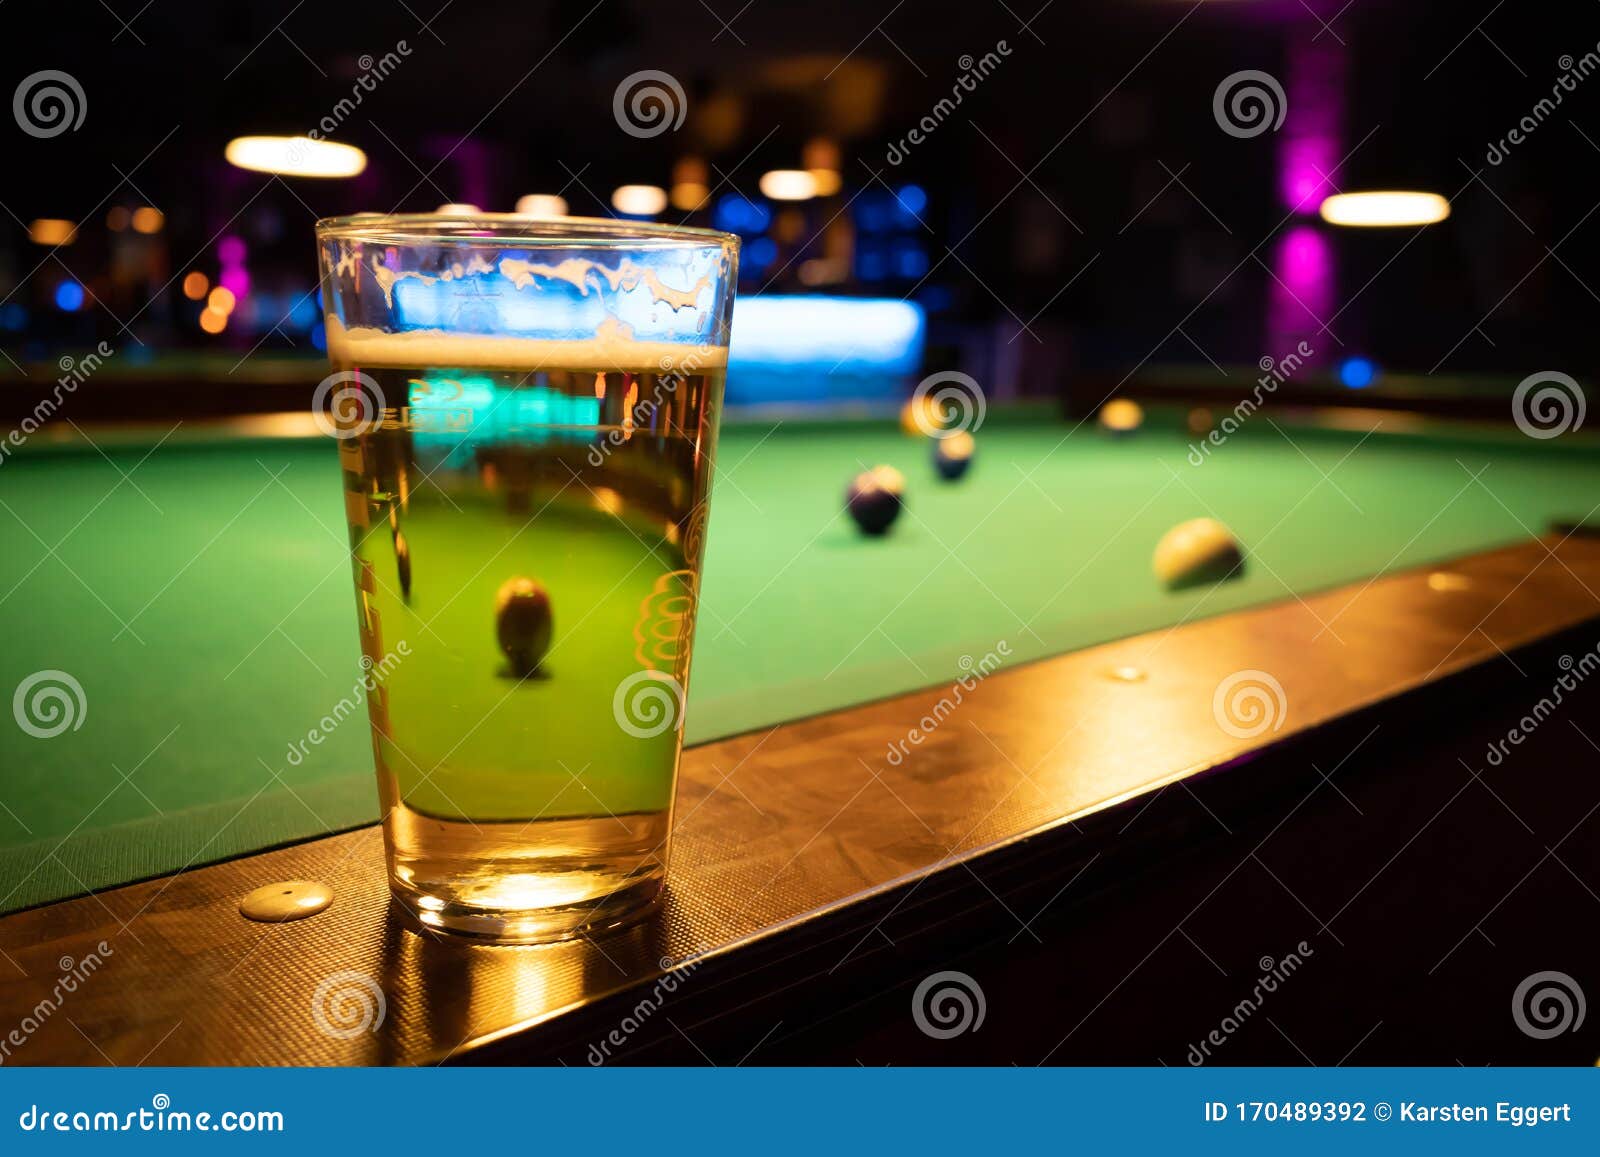 Een Billiardparlor Op De Spoorstaaf Pooltafel Een Glas Met Een Bier Stock Foto - Image of bier, glas: 170489392